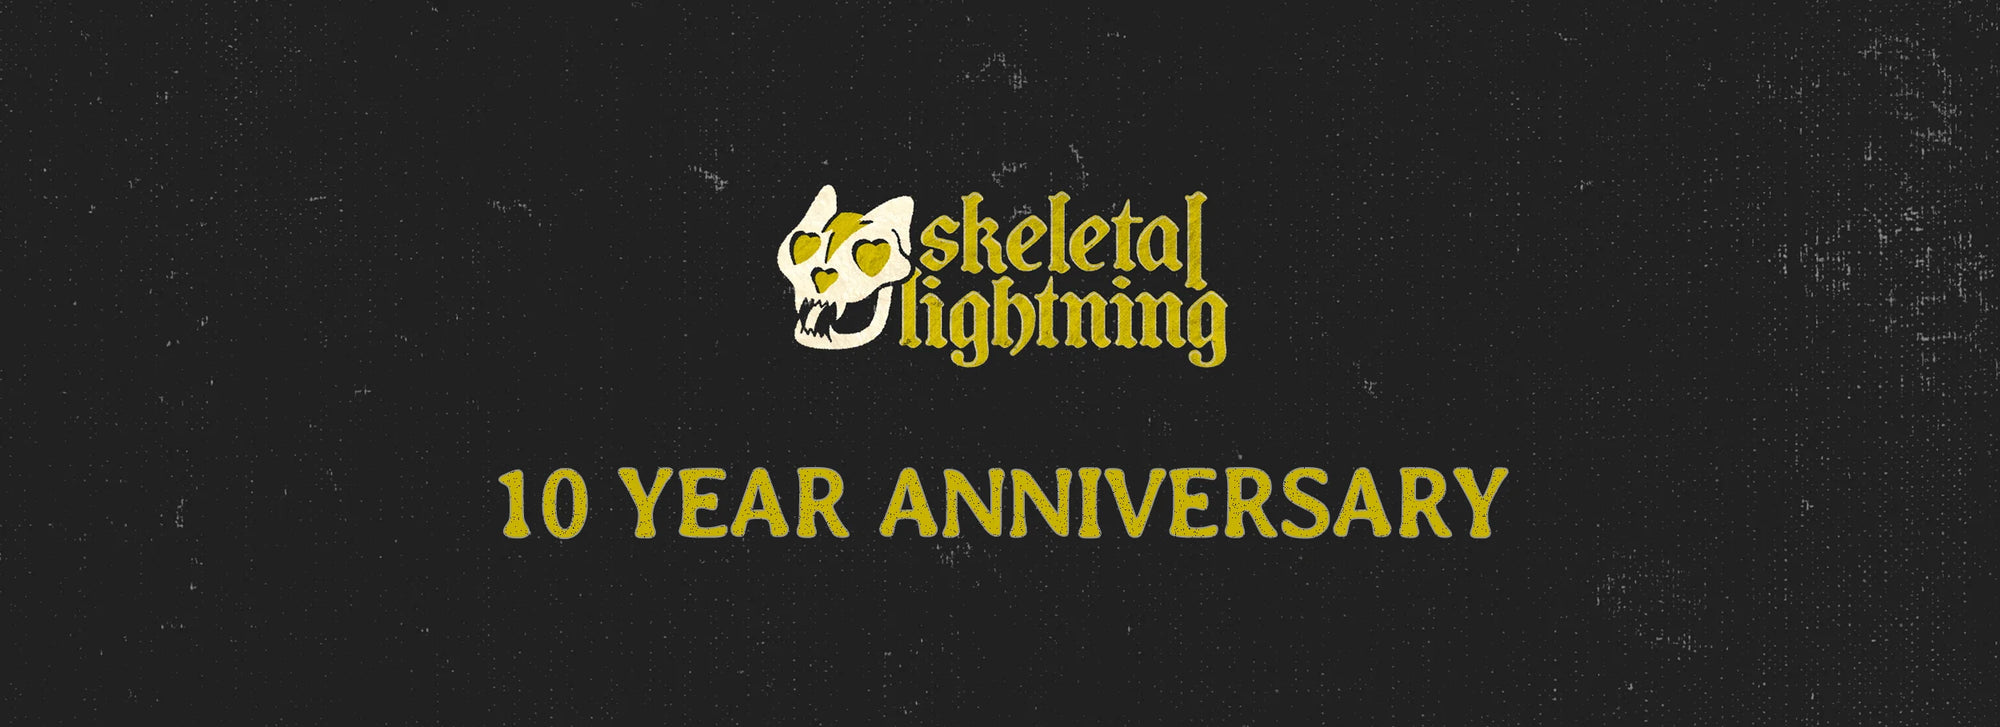 Celebrating a Decade of Skeletal Lightning!